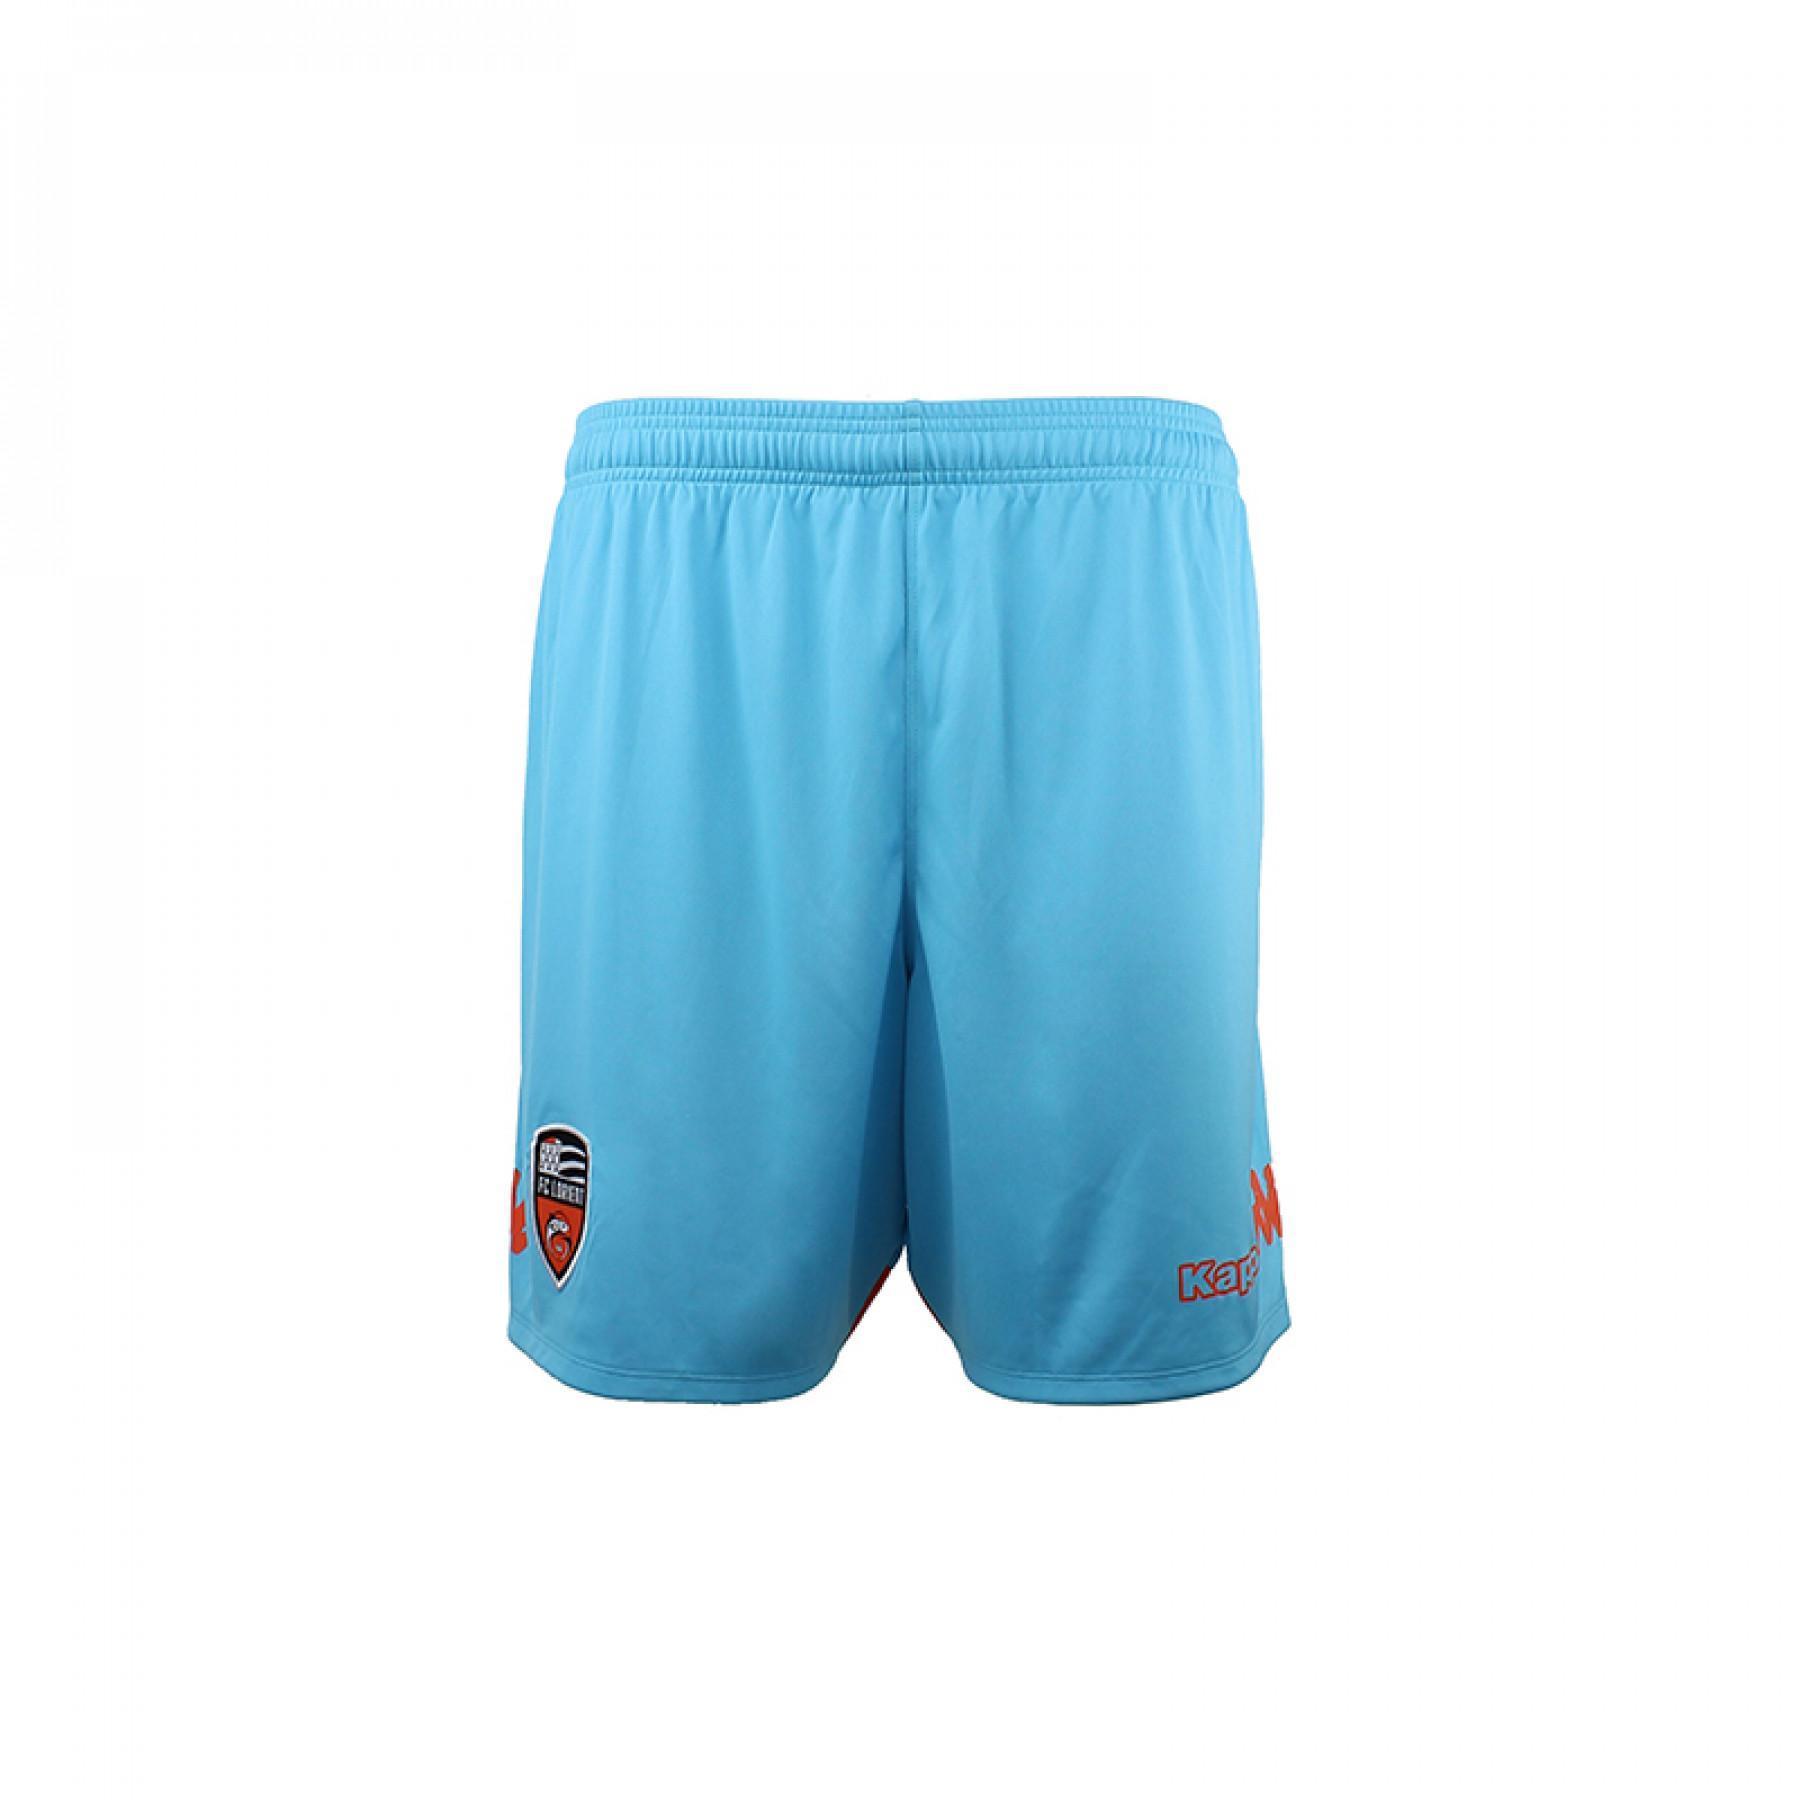 Pantalones cortos para niños tercero Lorient 2018/19